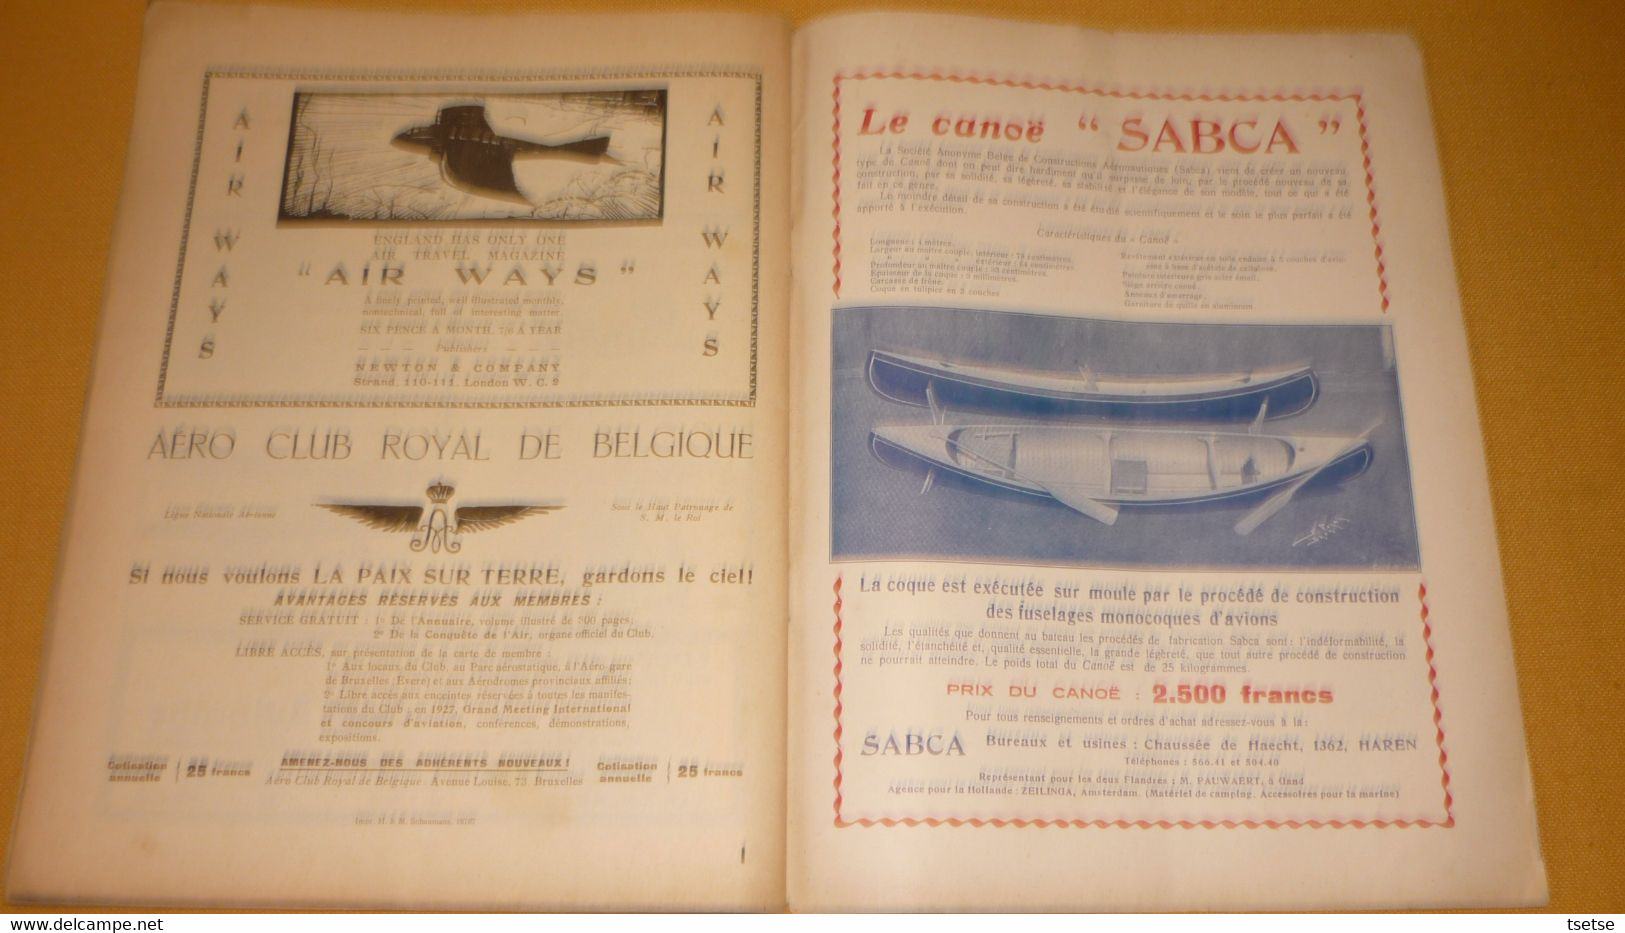 Revue " La Coquète de l'Air " - 1er Mai 1927 / articles pub Sabena , FN , SABCA, Shell